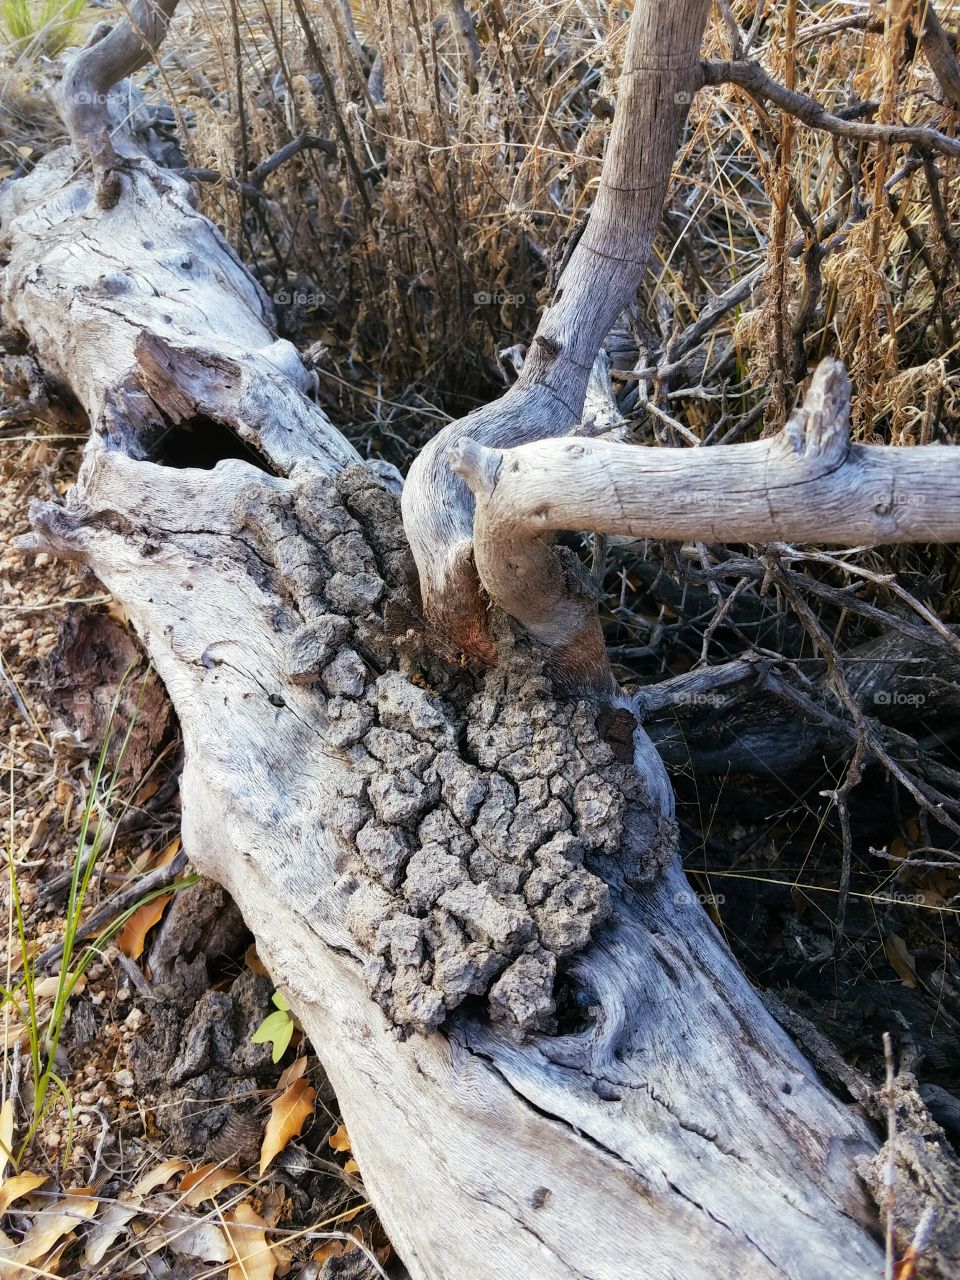 Dead wood